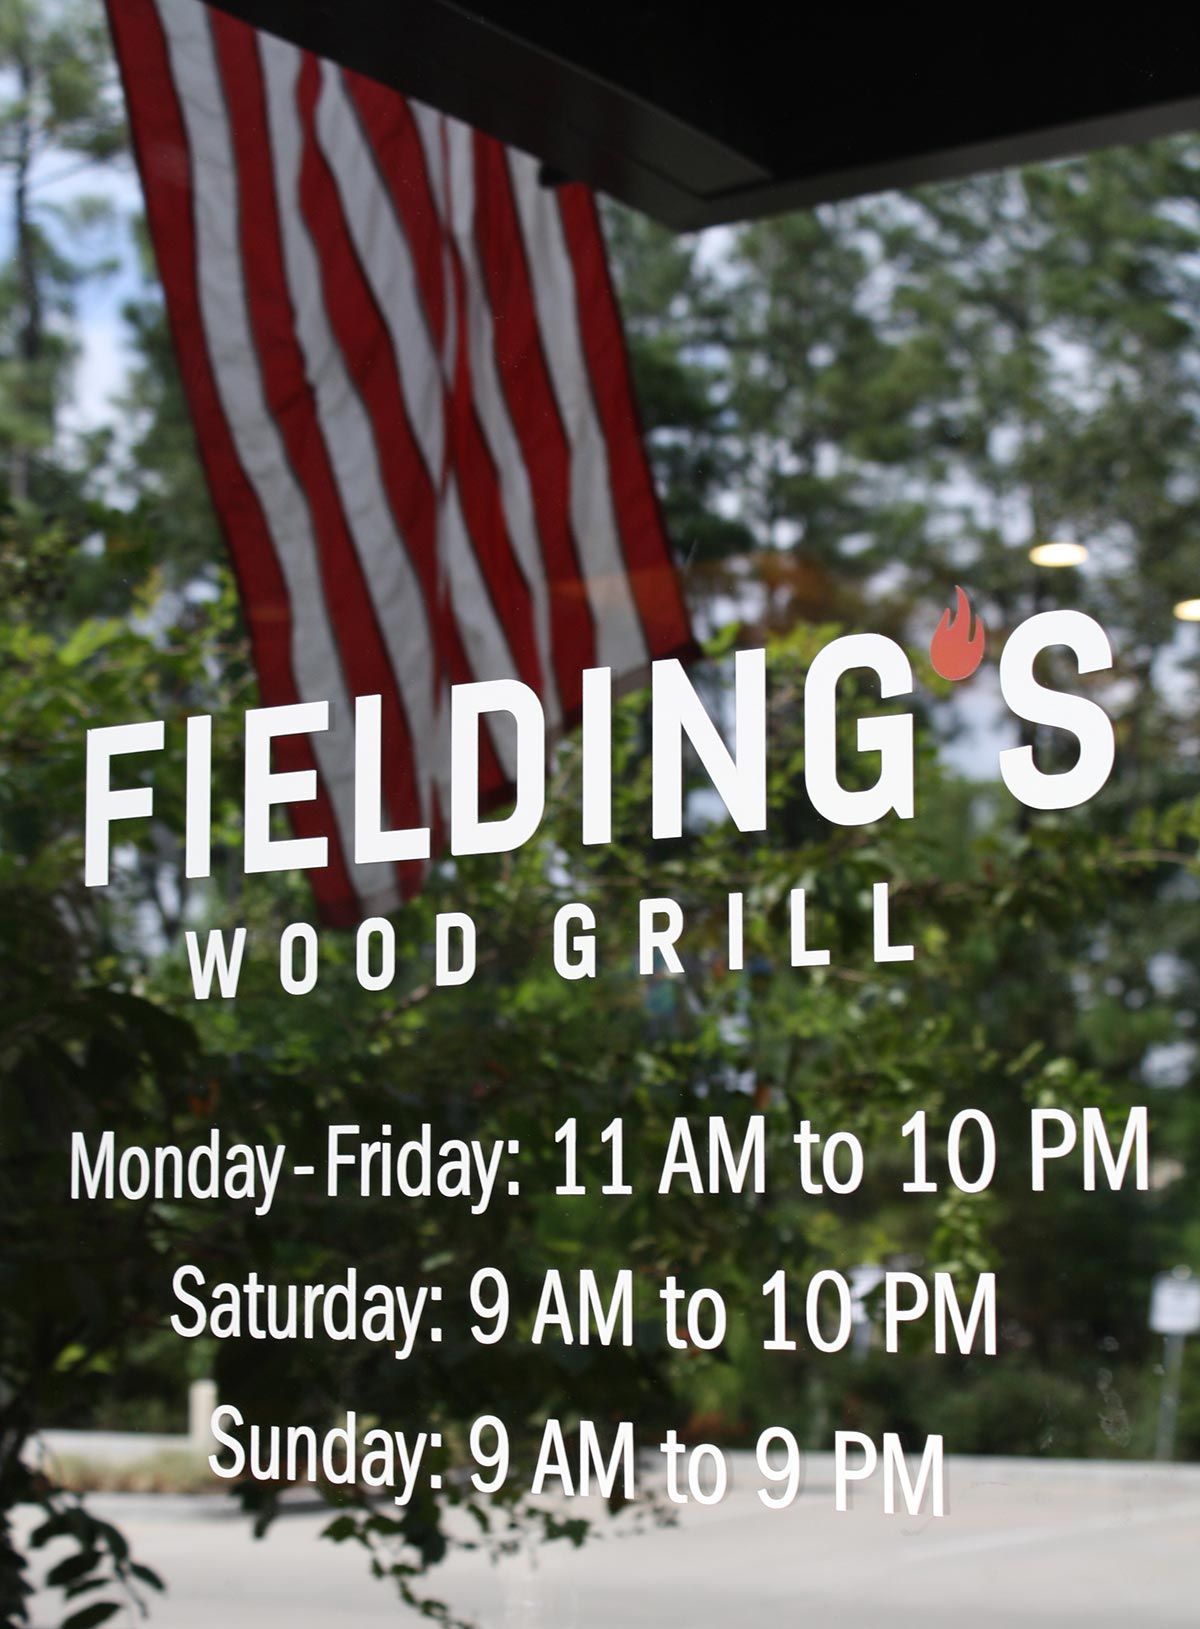 Fielding’s Wood Grill